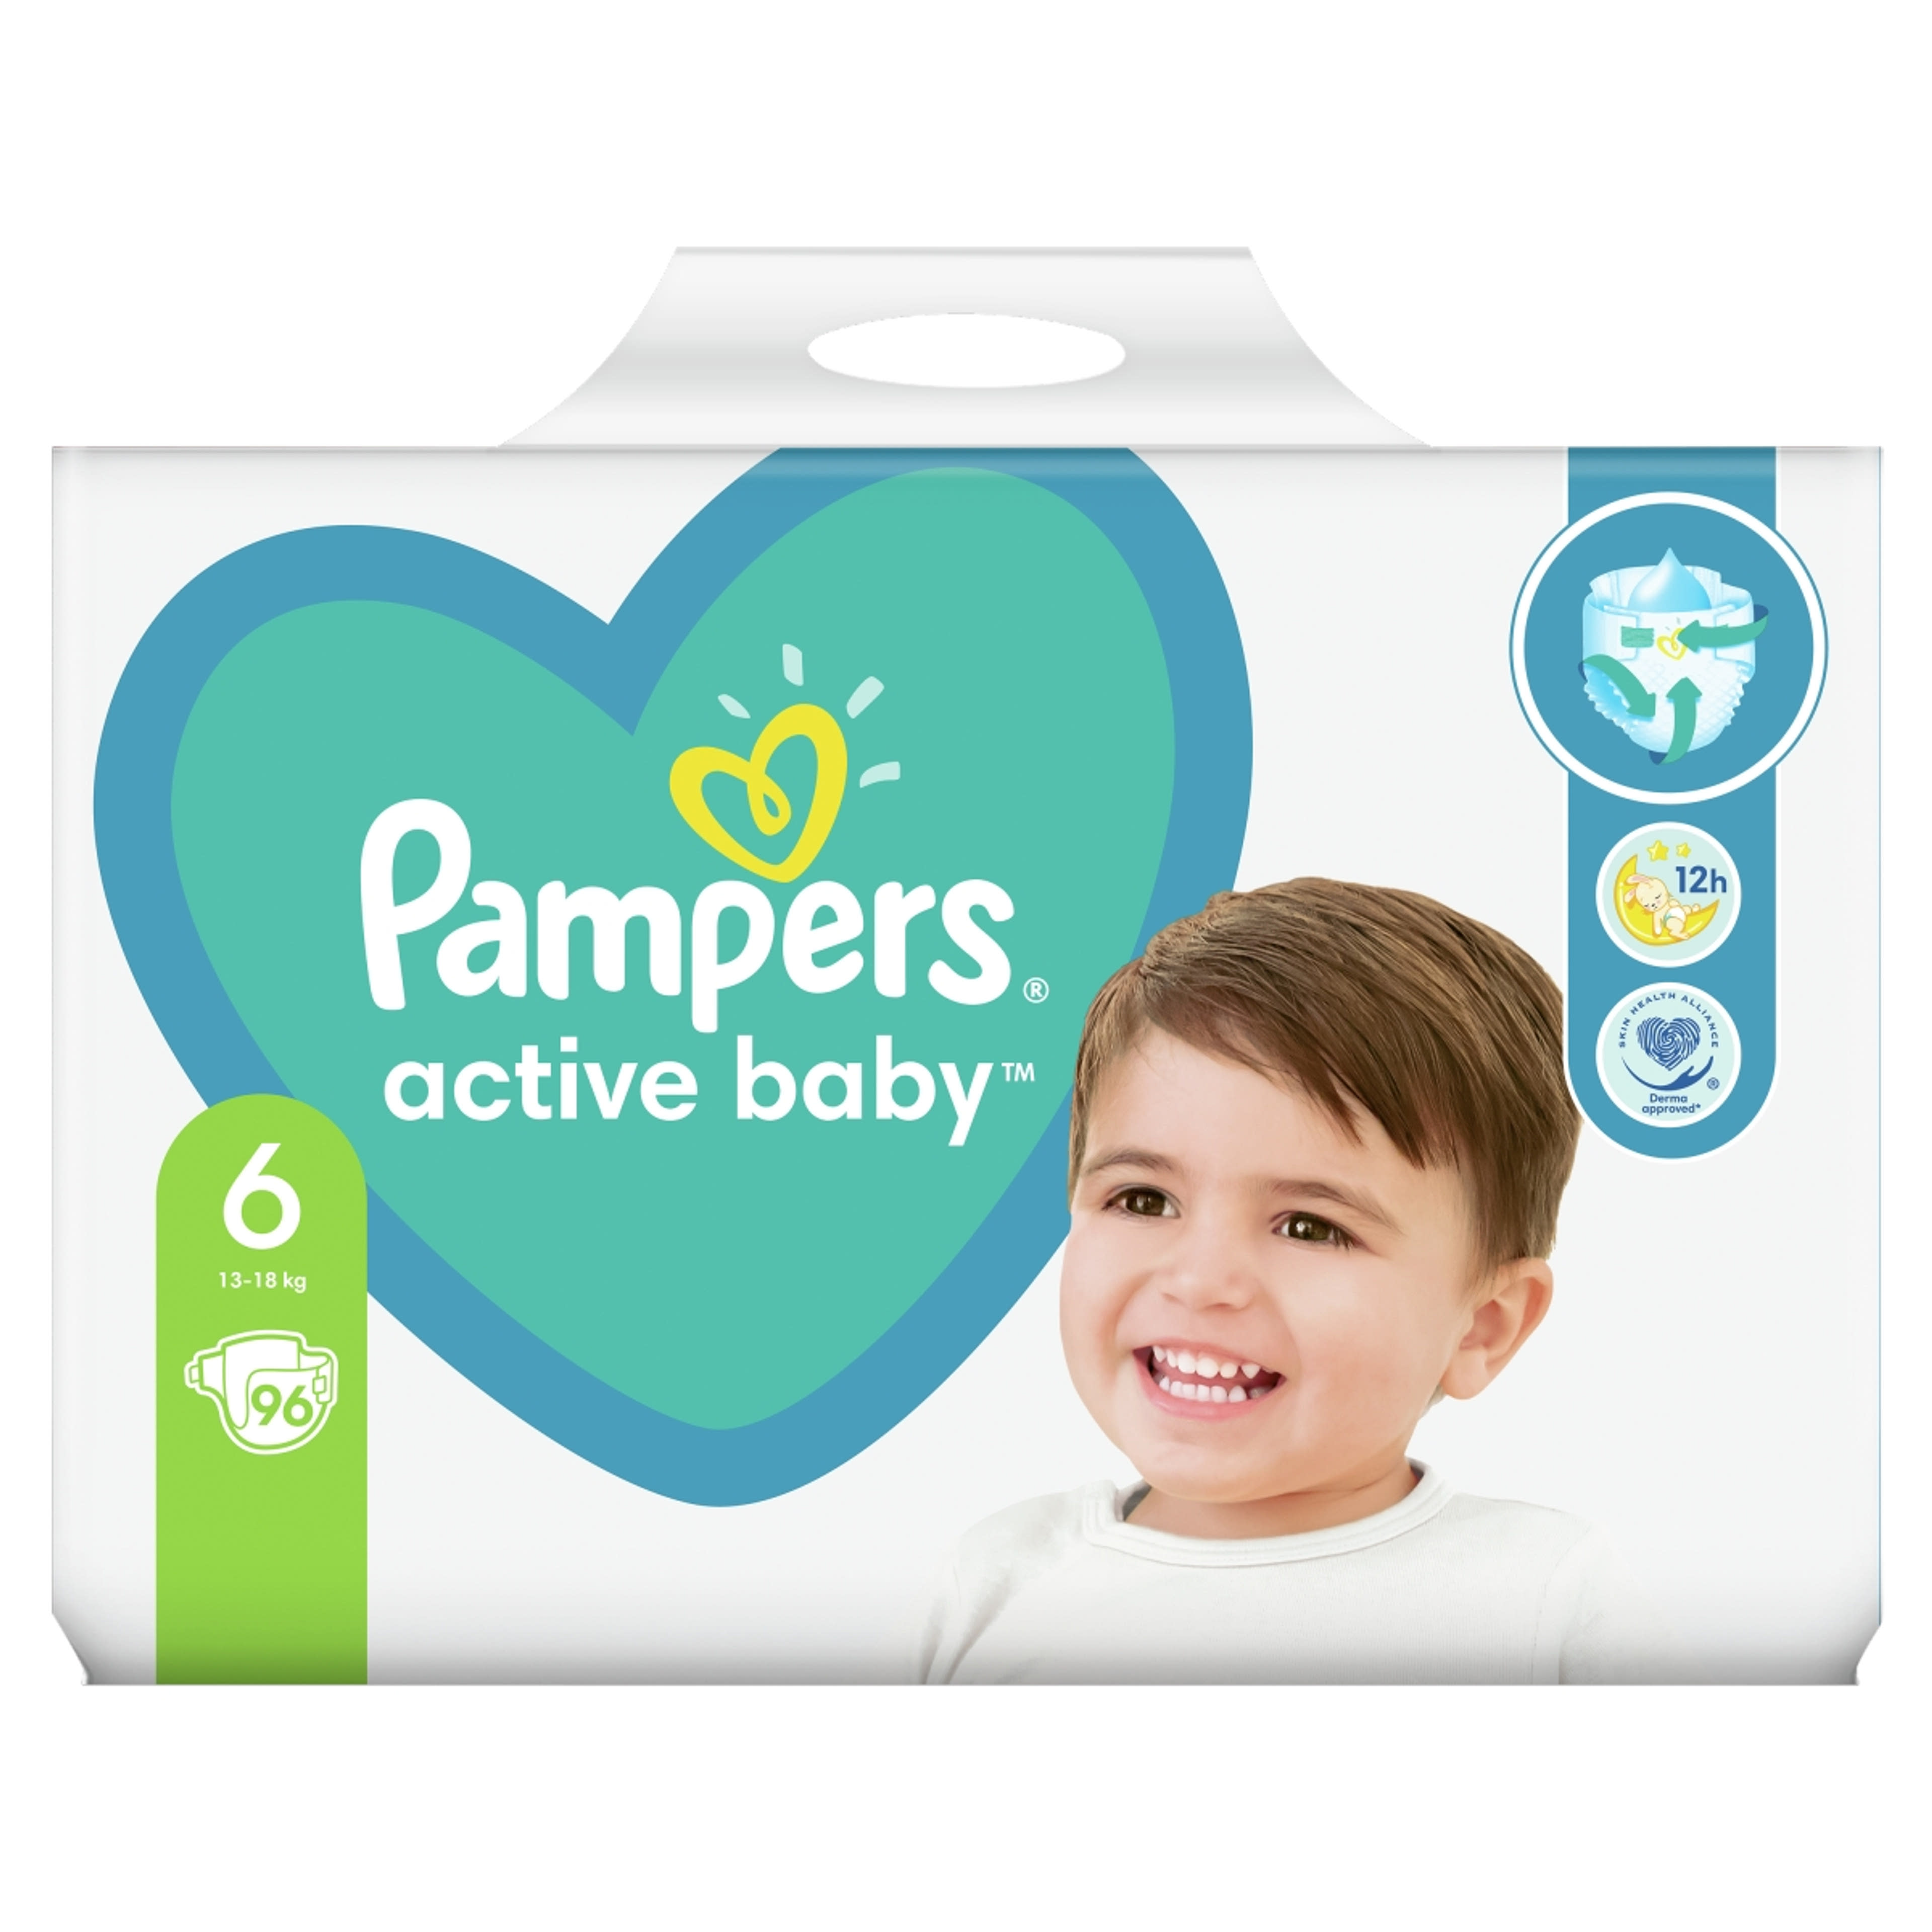 Pampers active baby mega pack+ 6-os 13-18kg - 96 db-2